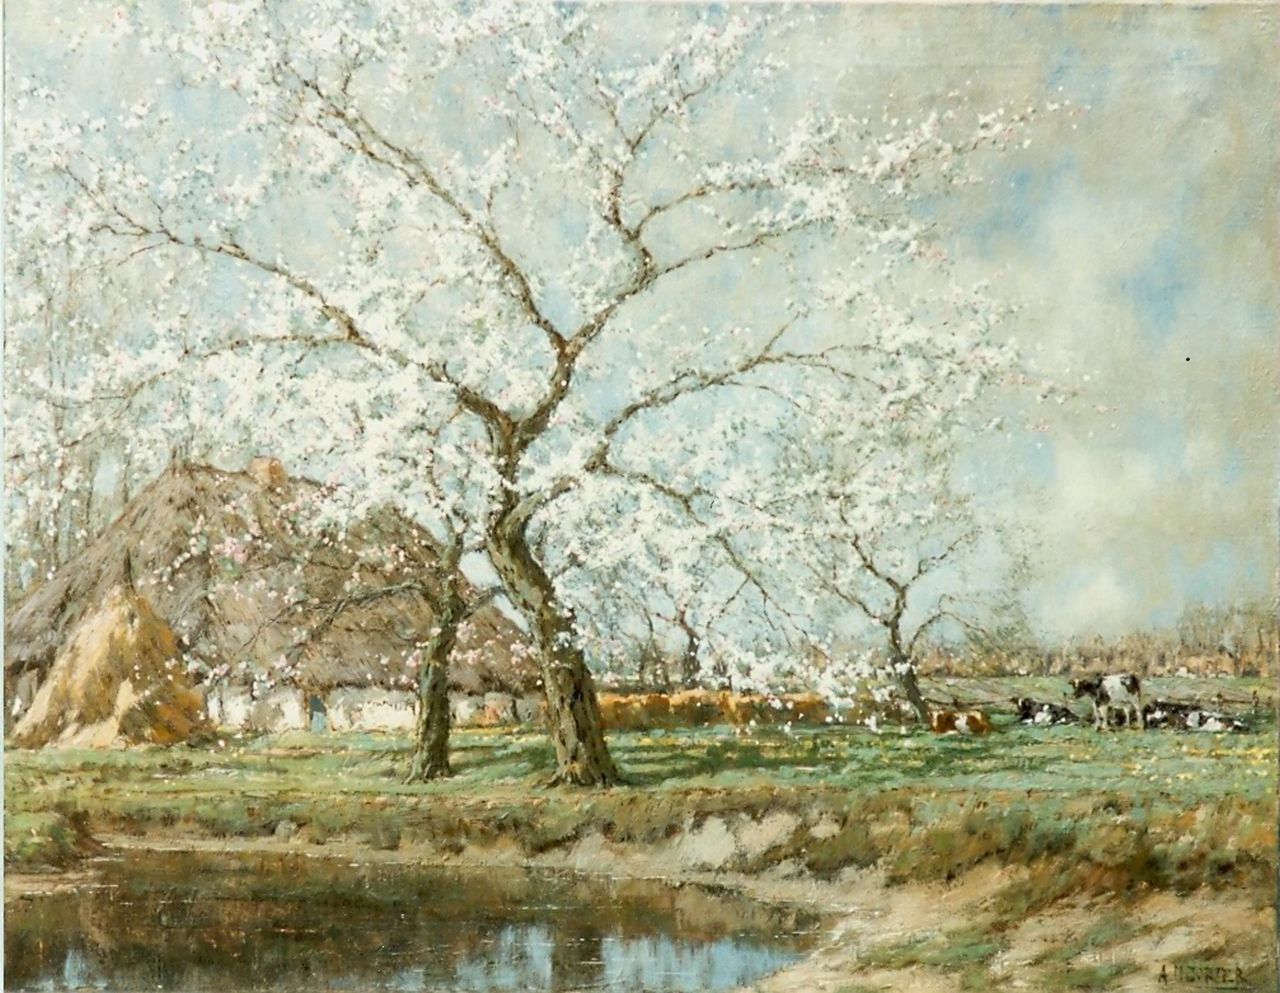 Gorter A.M.  | 'Arnold' Marc Gorter, Bloeiende appelboomgaard, olieverf op doek 75,4 x 96,3 cm, gesigneerd rechtsonder